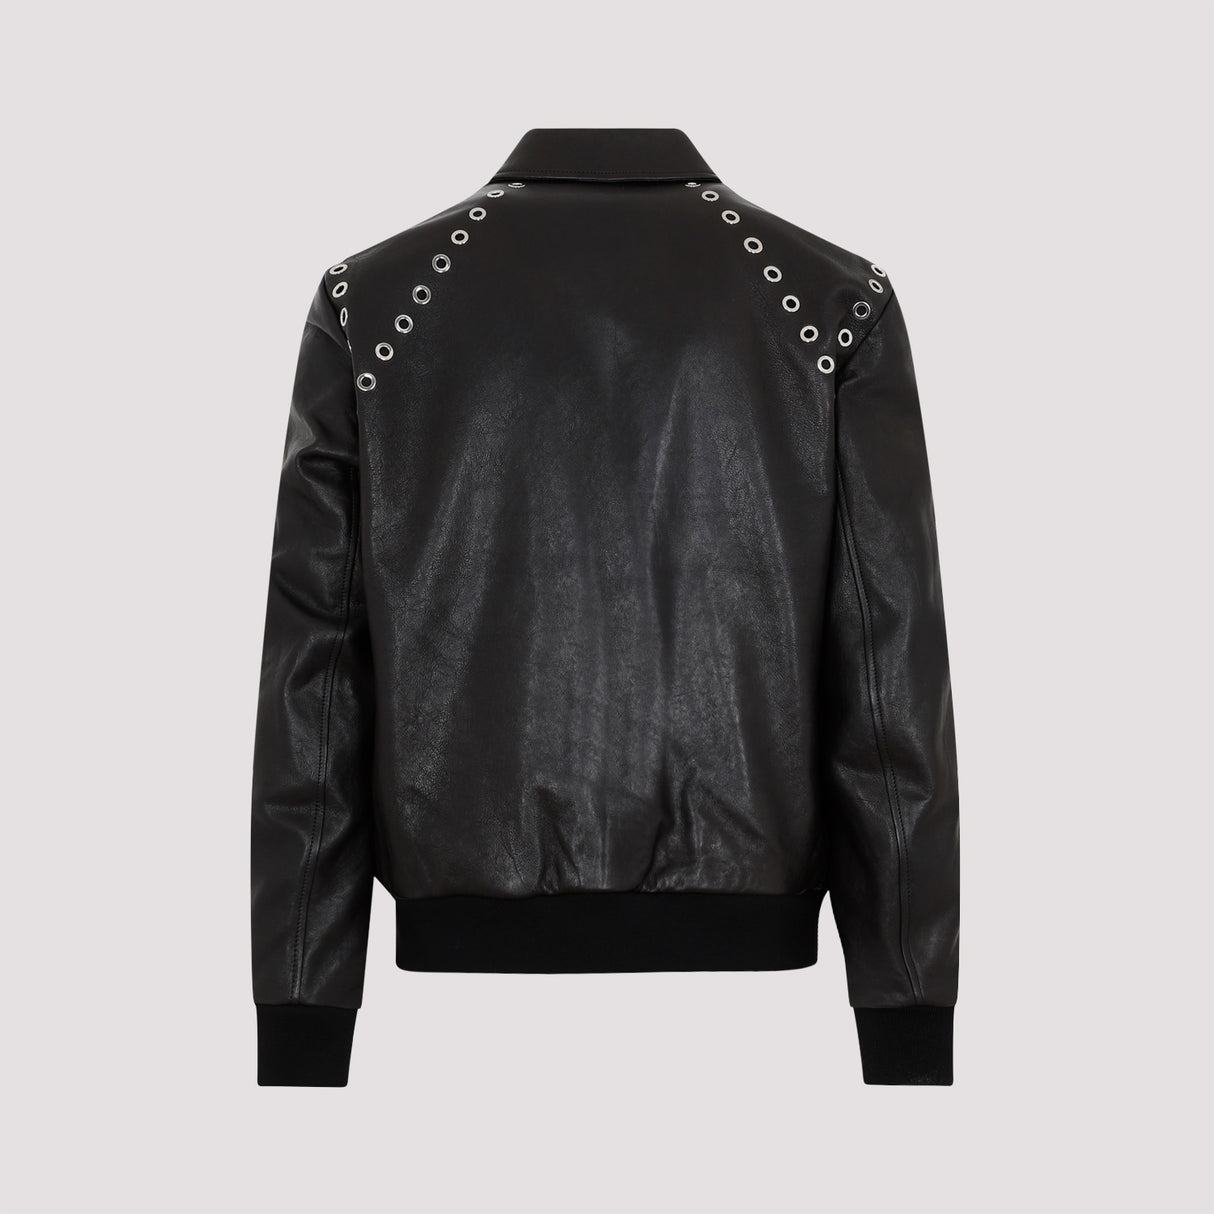 Áo khoác da nam màu đen - Bộ sưu tập SS23 của Alexander McQueen